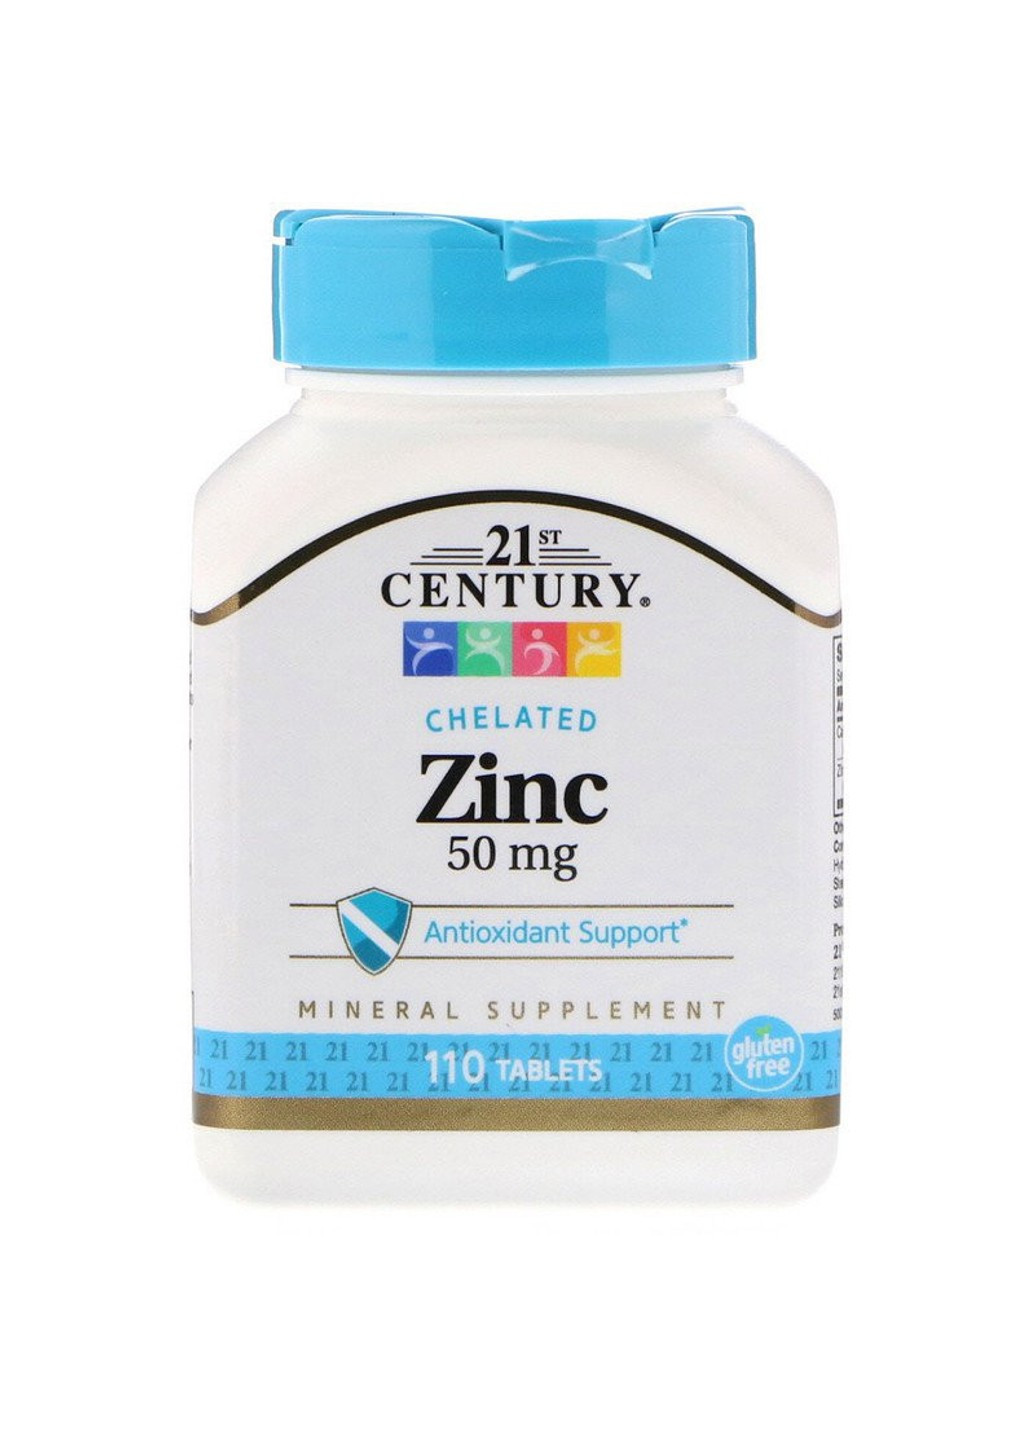 Цинк хелат Chelated Zinc 50 mg (110 таб) 21 век центури 21st Century (255408911)